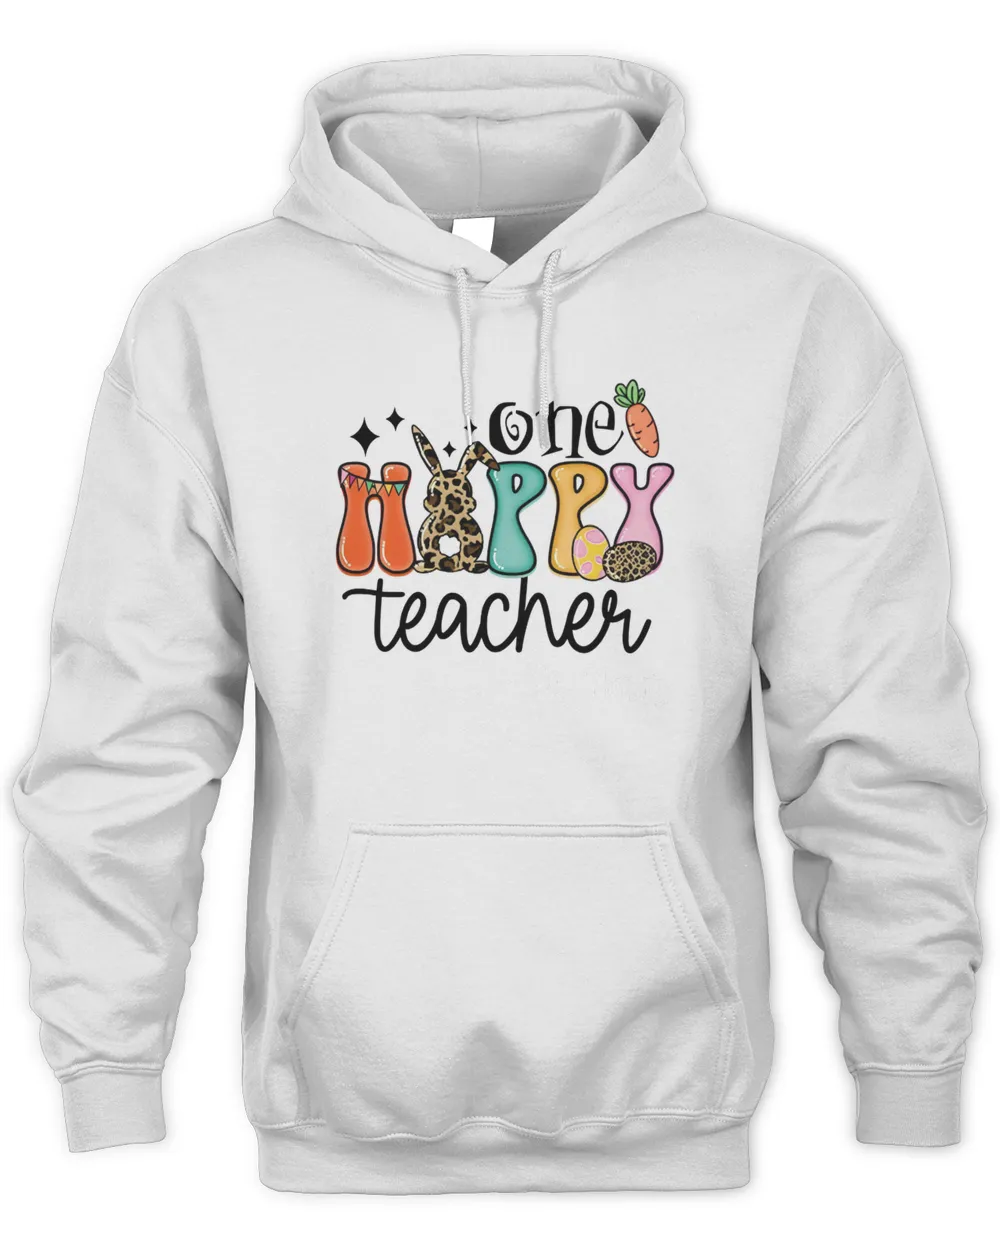 One Hoppy Teacher Hoodie, Teacher Easter Hoodie, Hip Hop Bunny Teacher Hoodie, One Happy Teacher Easter Hoodie